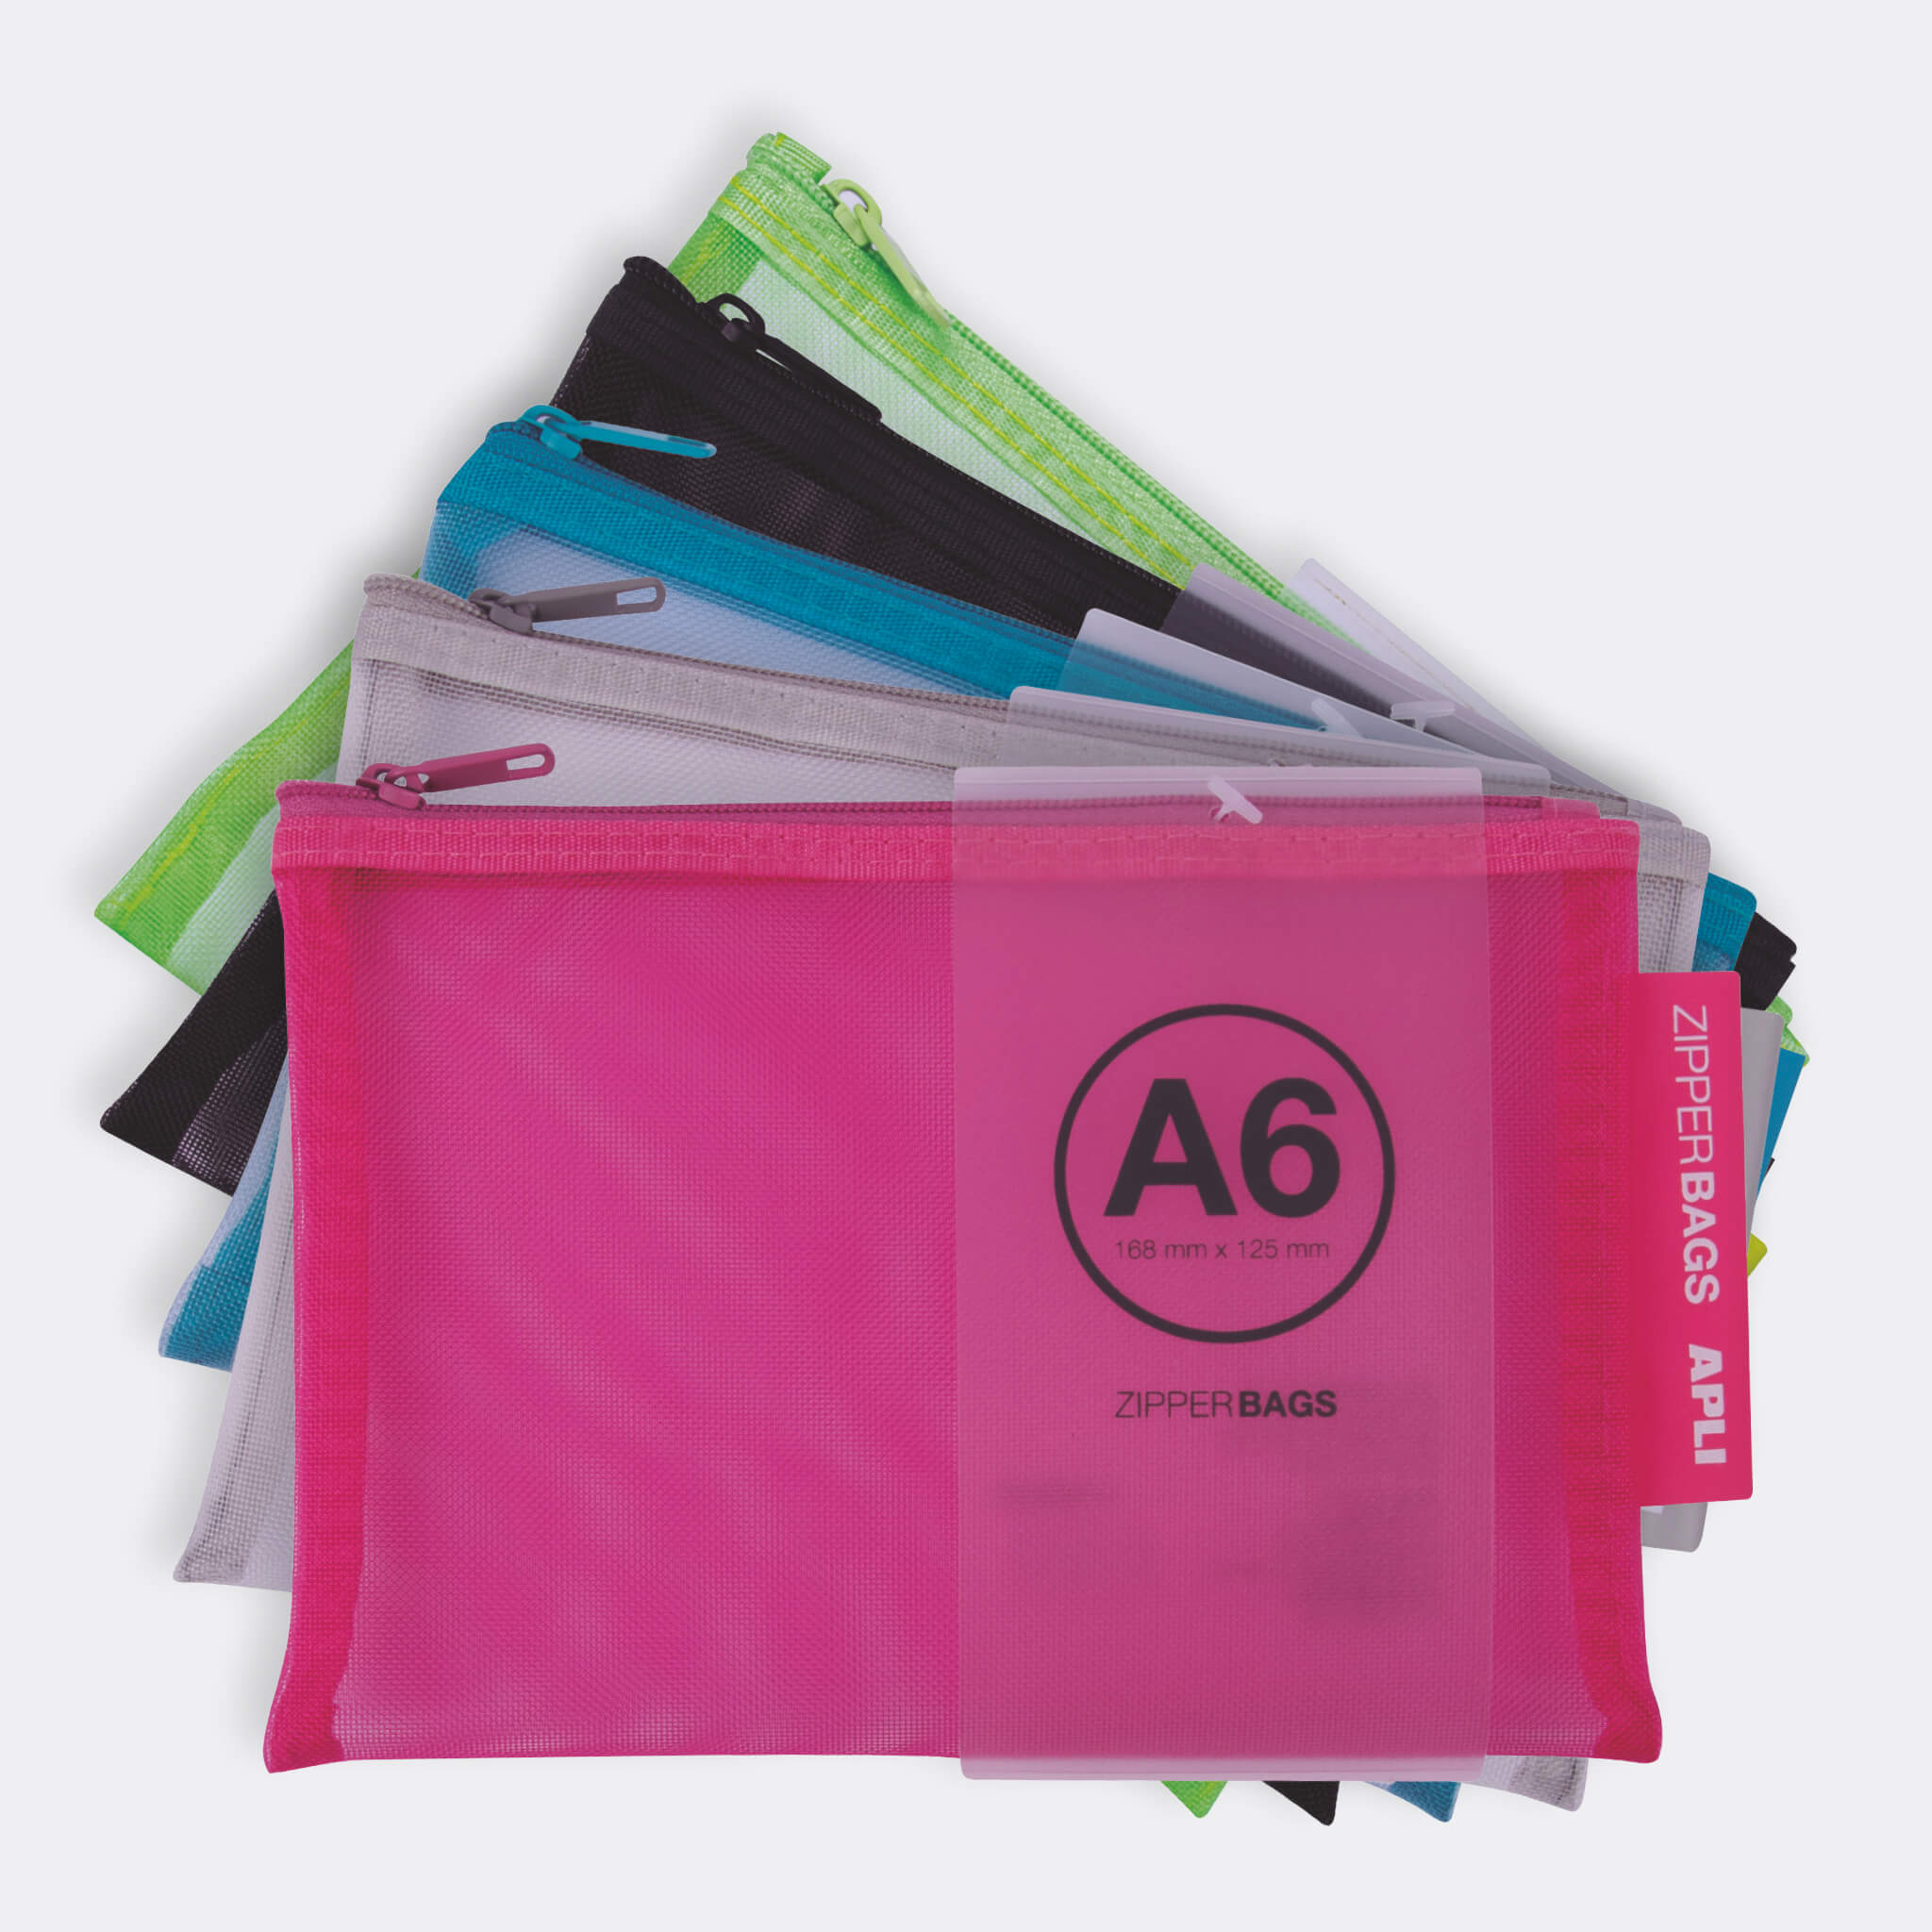  Pochette à zip pour document A6 Apli Zipper Bags